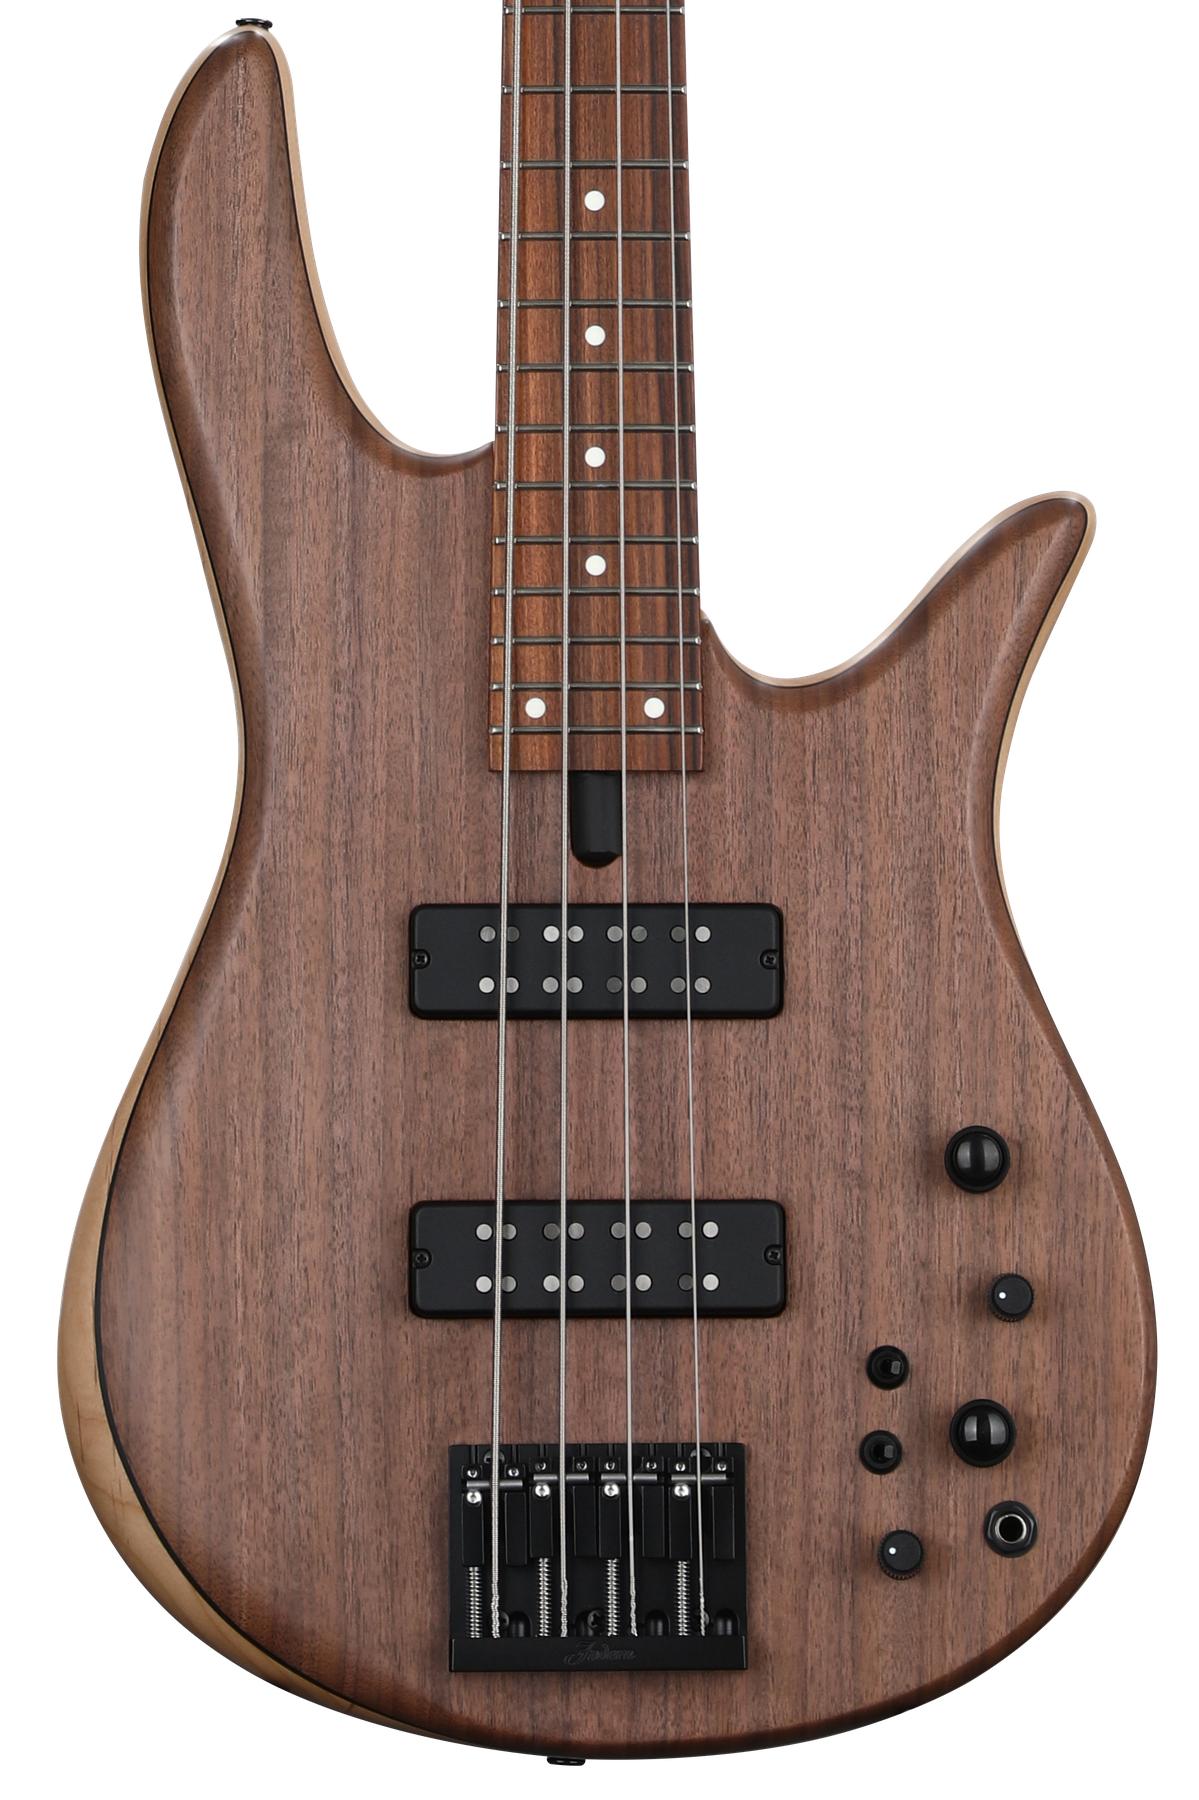 Fodera Monarch 4 Standard Bass Guitar - Natural Figured Walnut